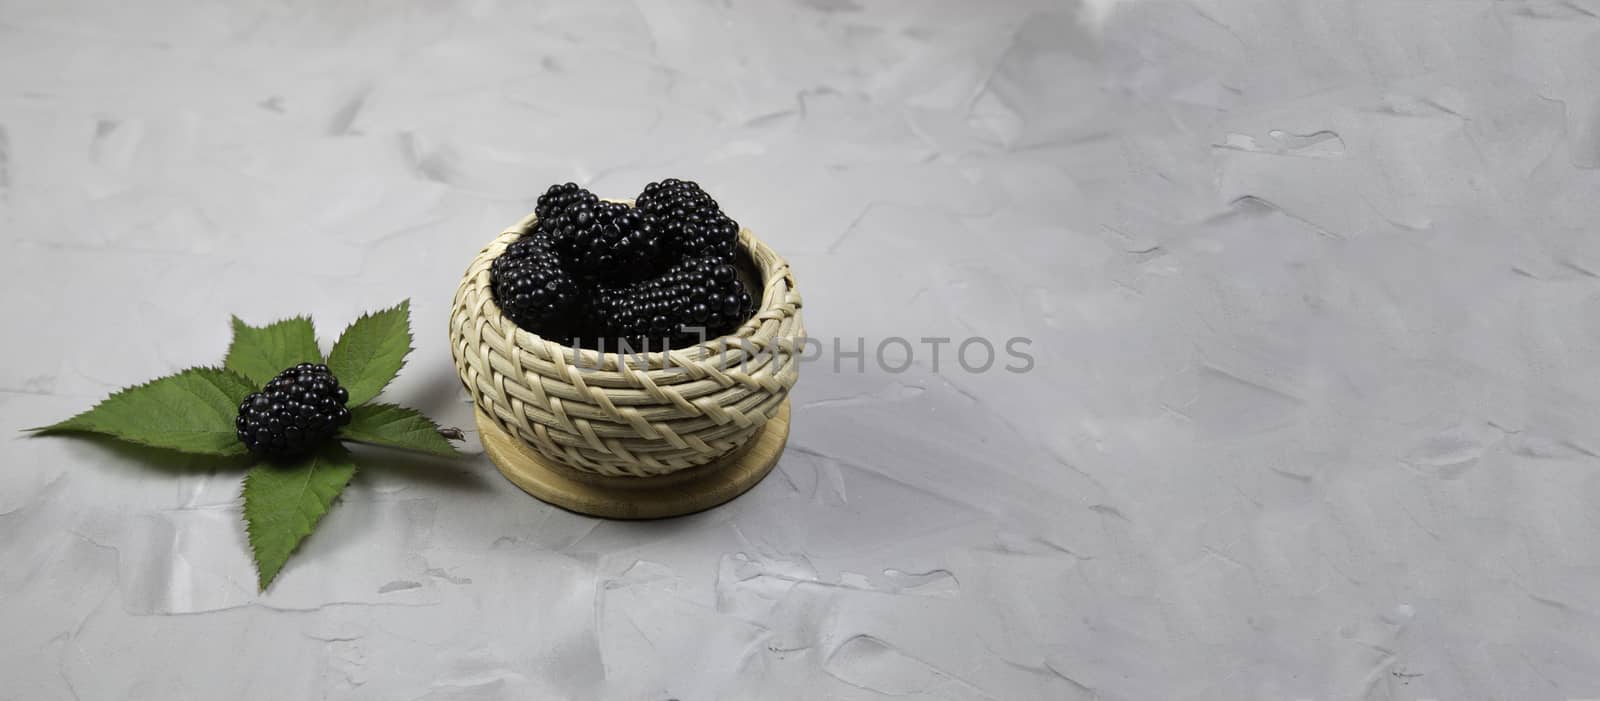 Ripe sweet blackberry in wooden wicker bowl on gray concrete background.